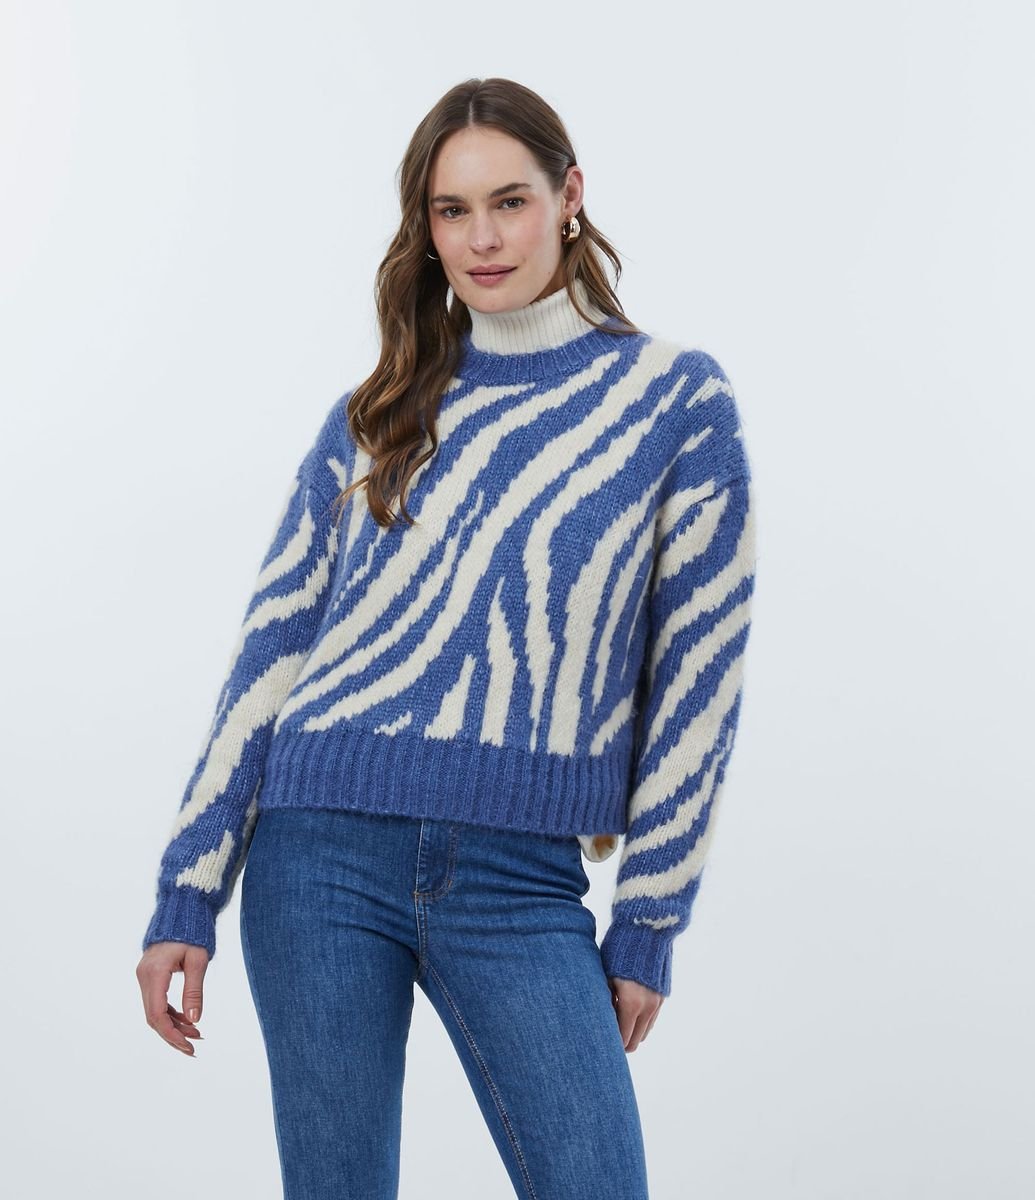 Suéter de zebra azul, da Renner